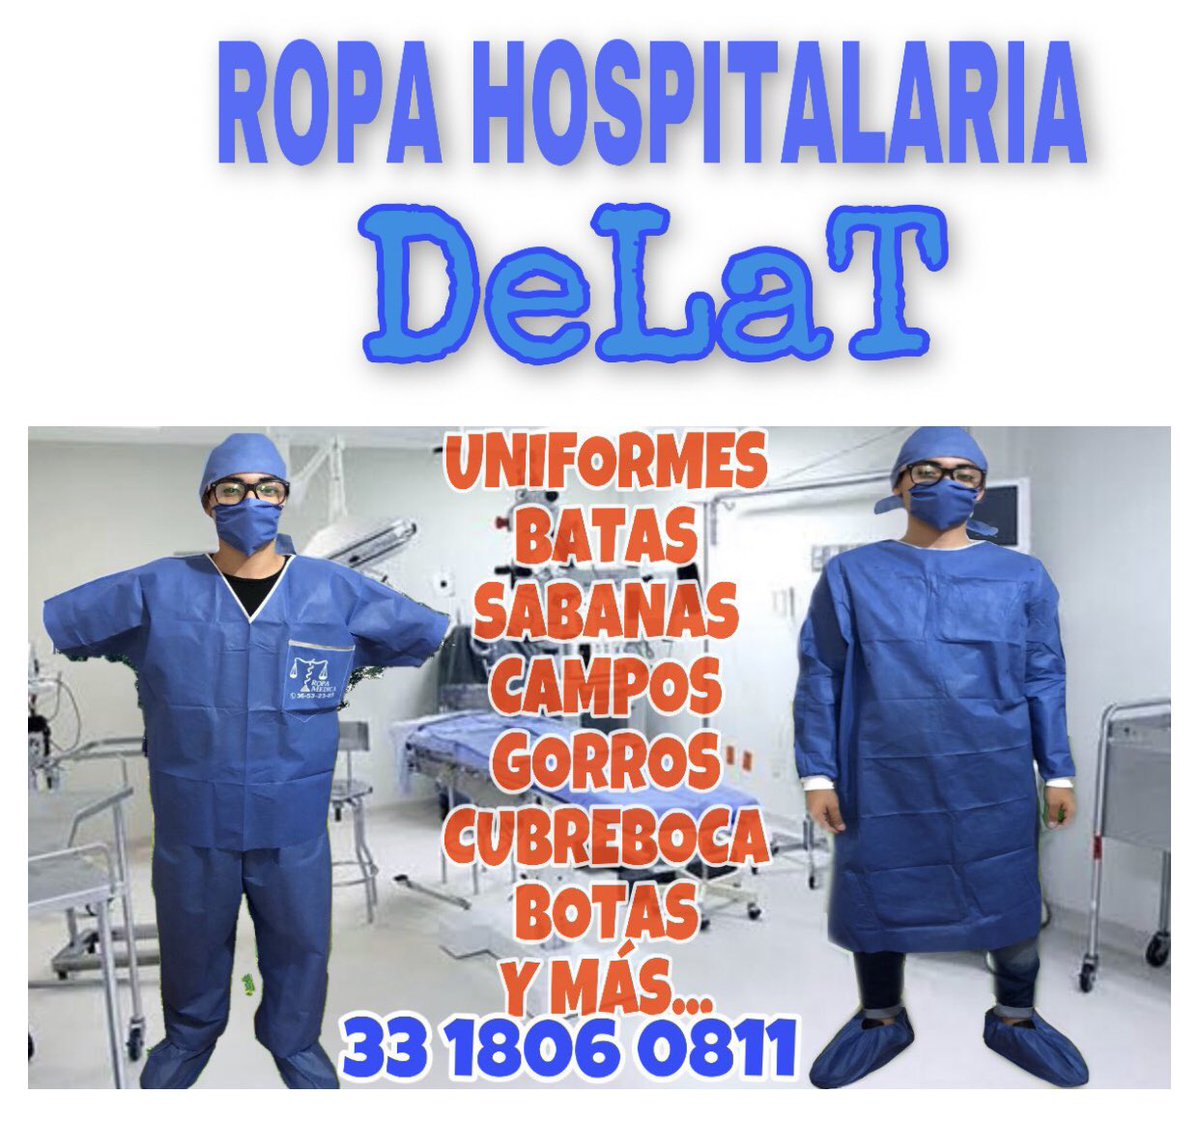 DESECHABLE PARA SPA Y HOSPITALARIO DeLaT (@ropa_medica) / Twitter